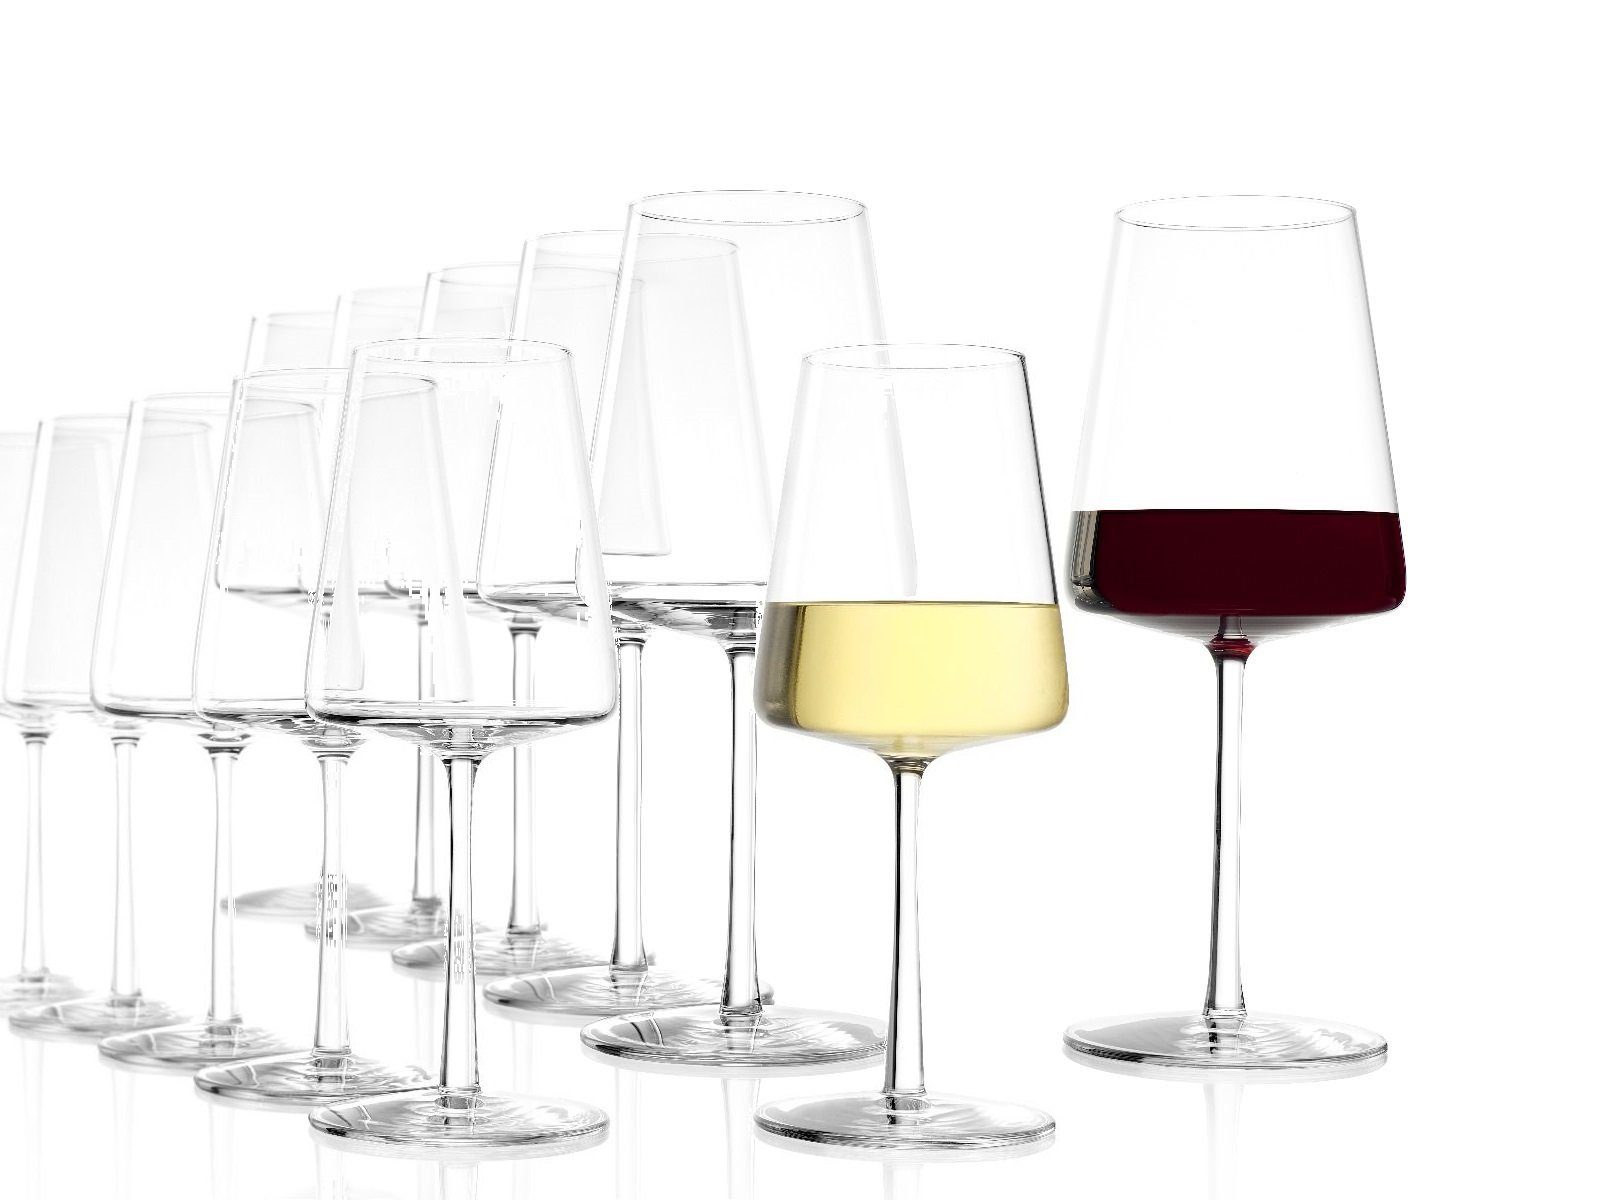 Weingläser für Rot- & Weißwein » online kaufen | OTTO